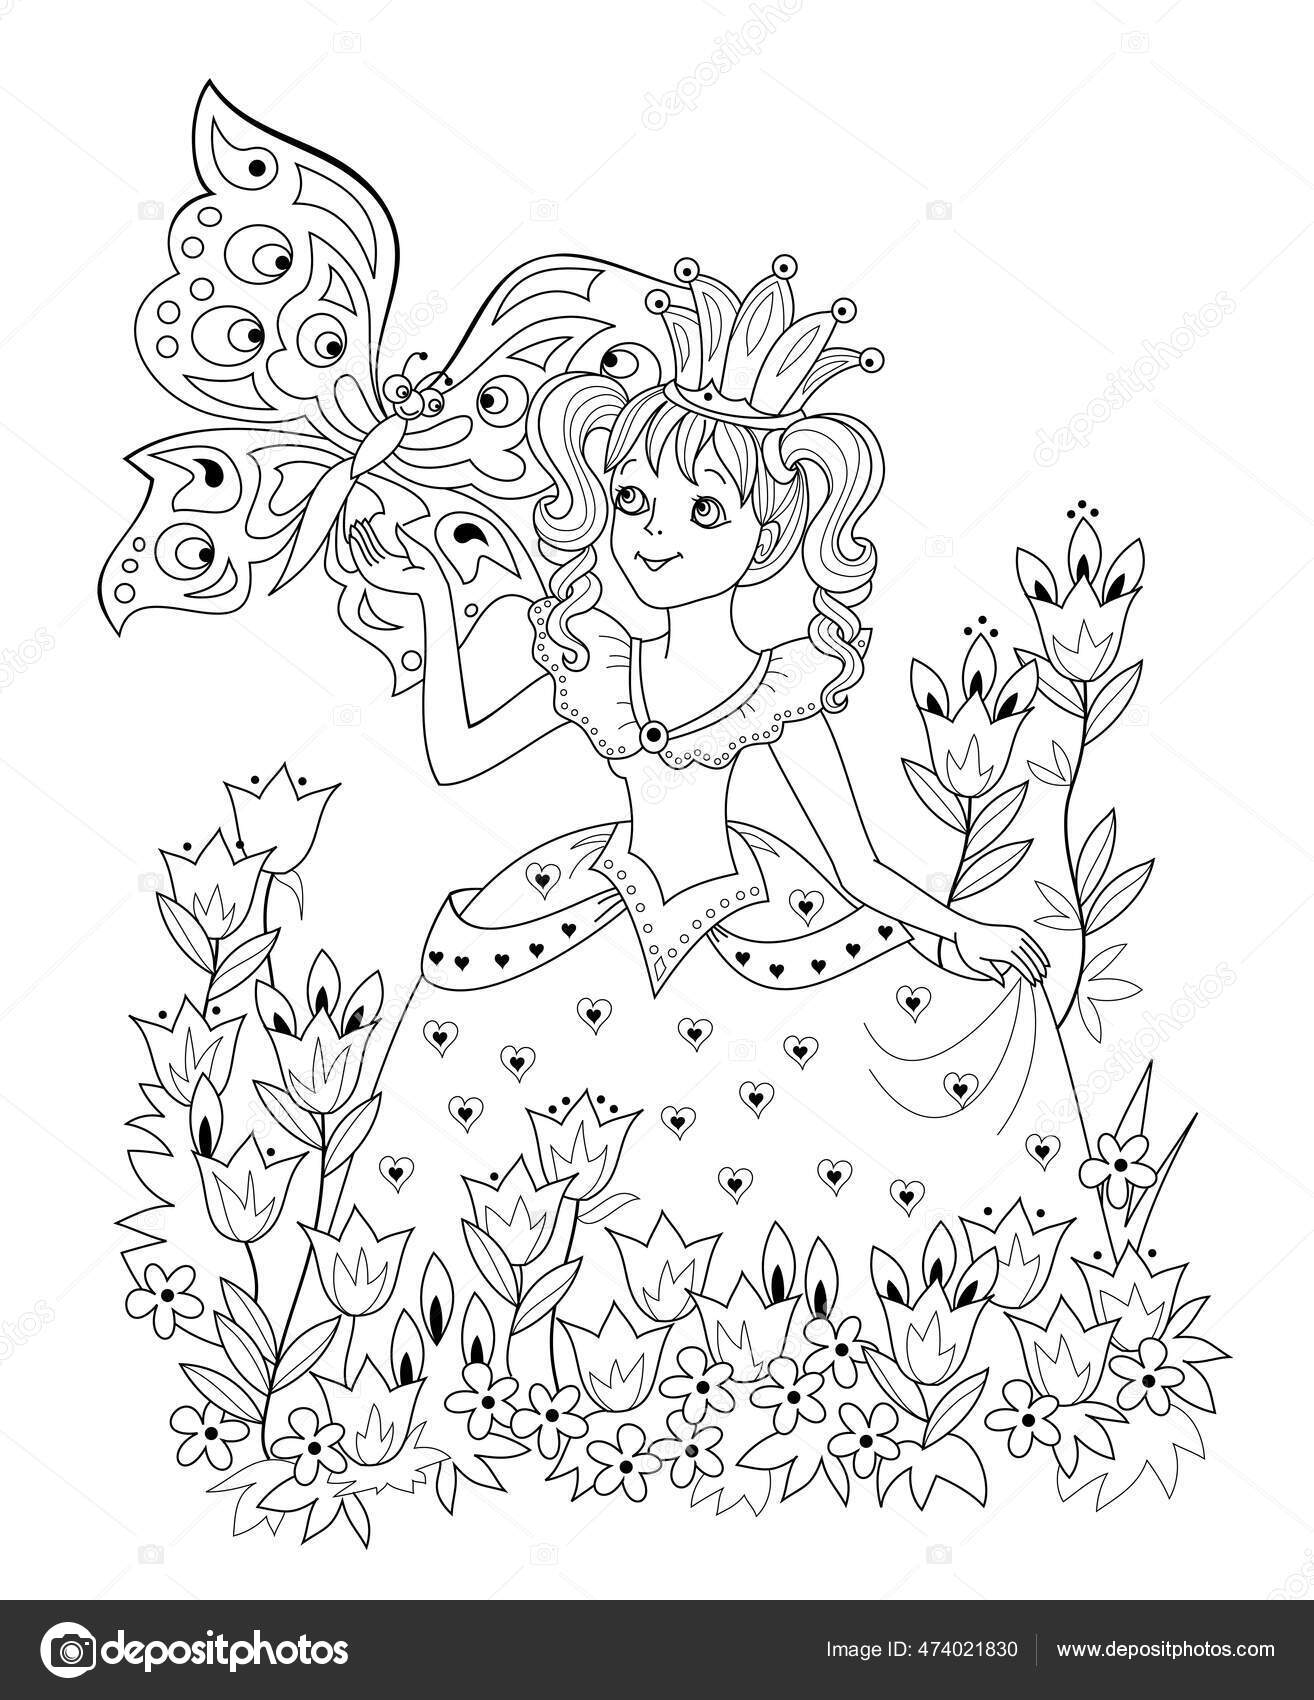 Uma página para colorir de um pônei com uma flor e borboleta